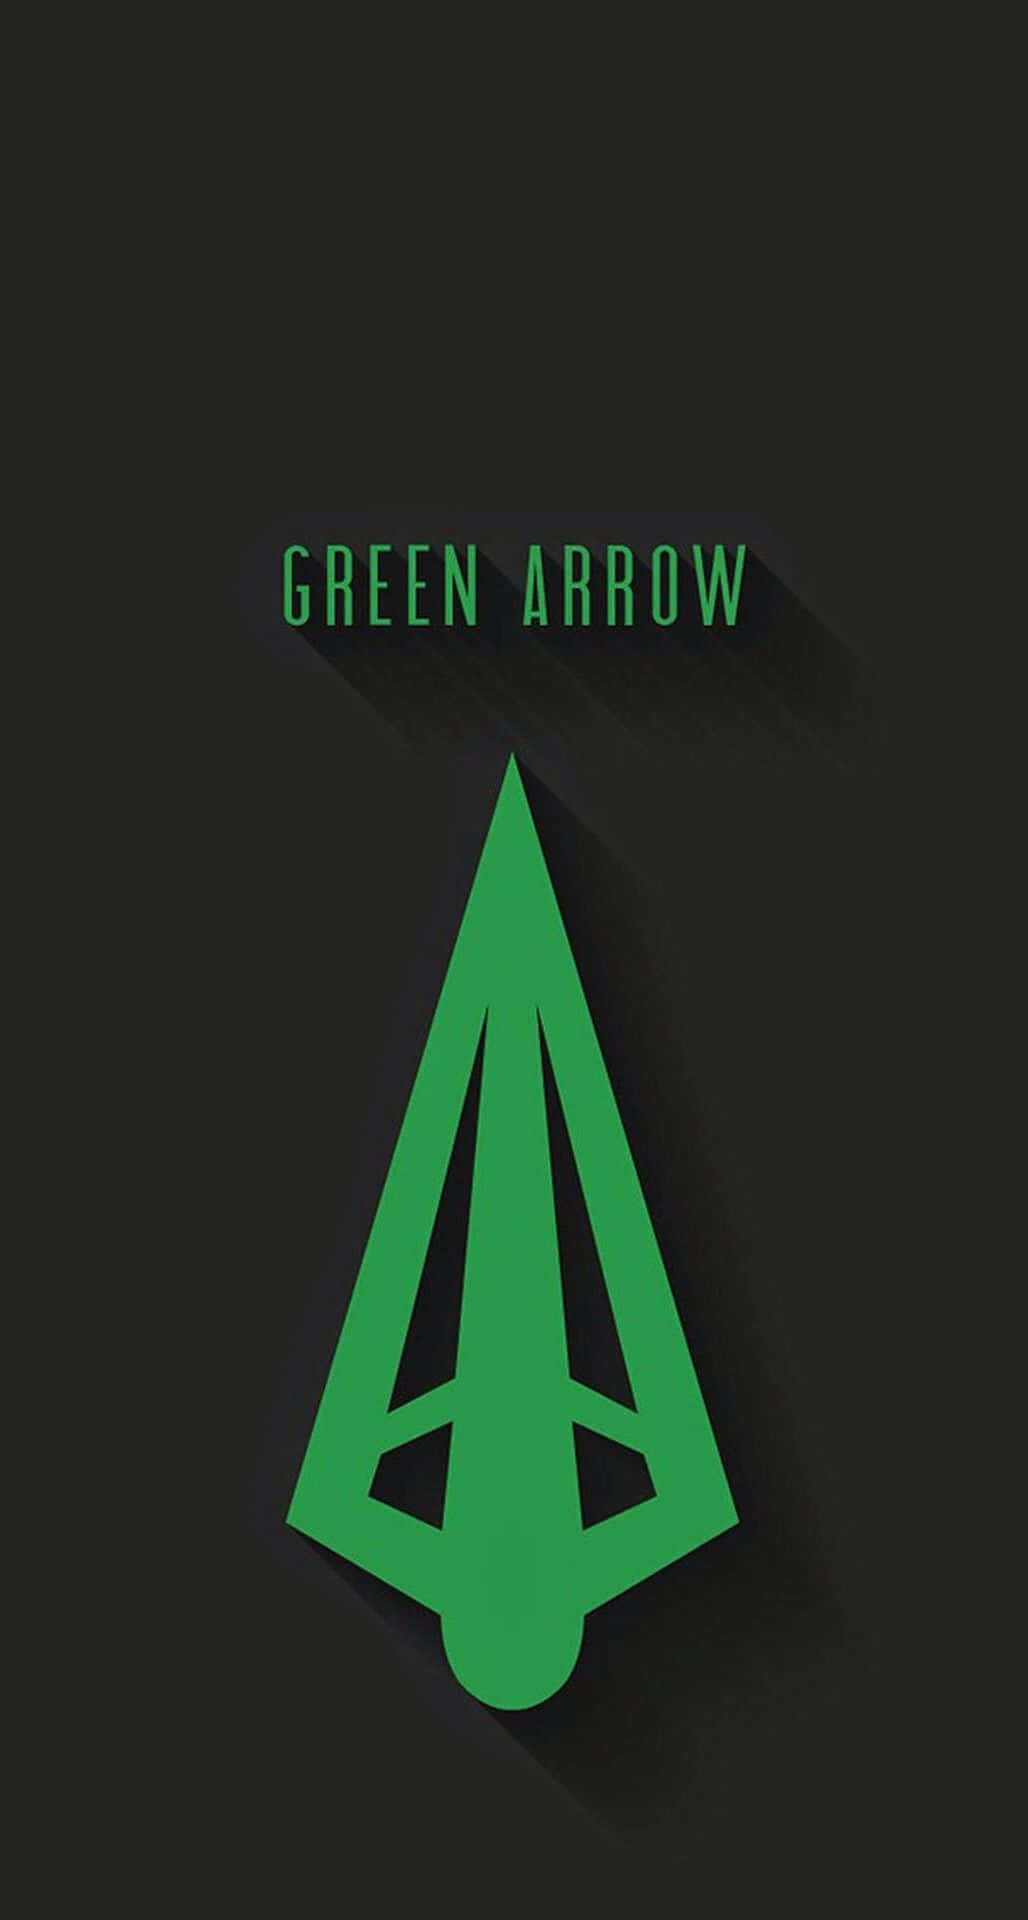 Mostrail Tuo Stile Con Il Nuovo E Sorprendente Sfondo Green Arrow Per Iphone Sfondo